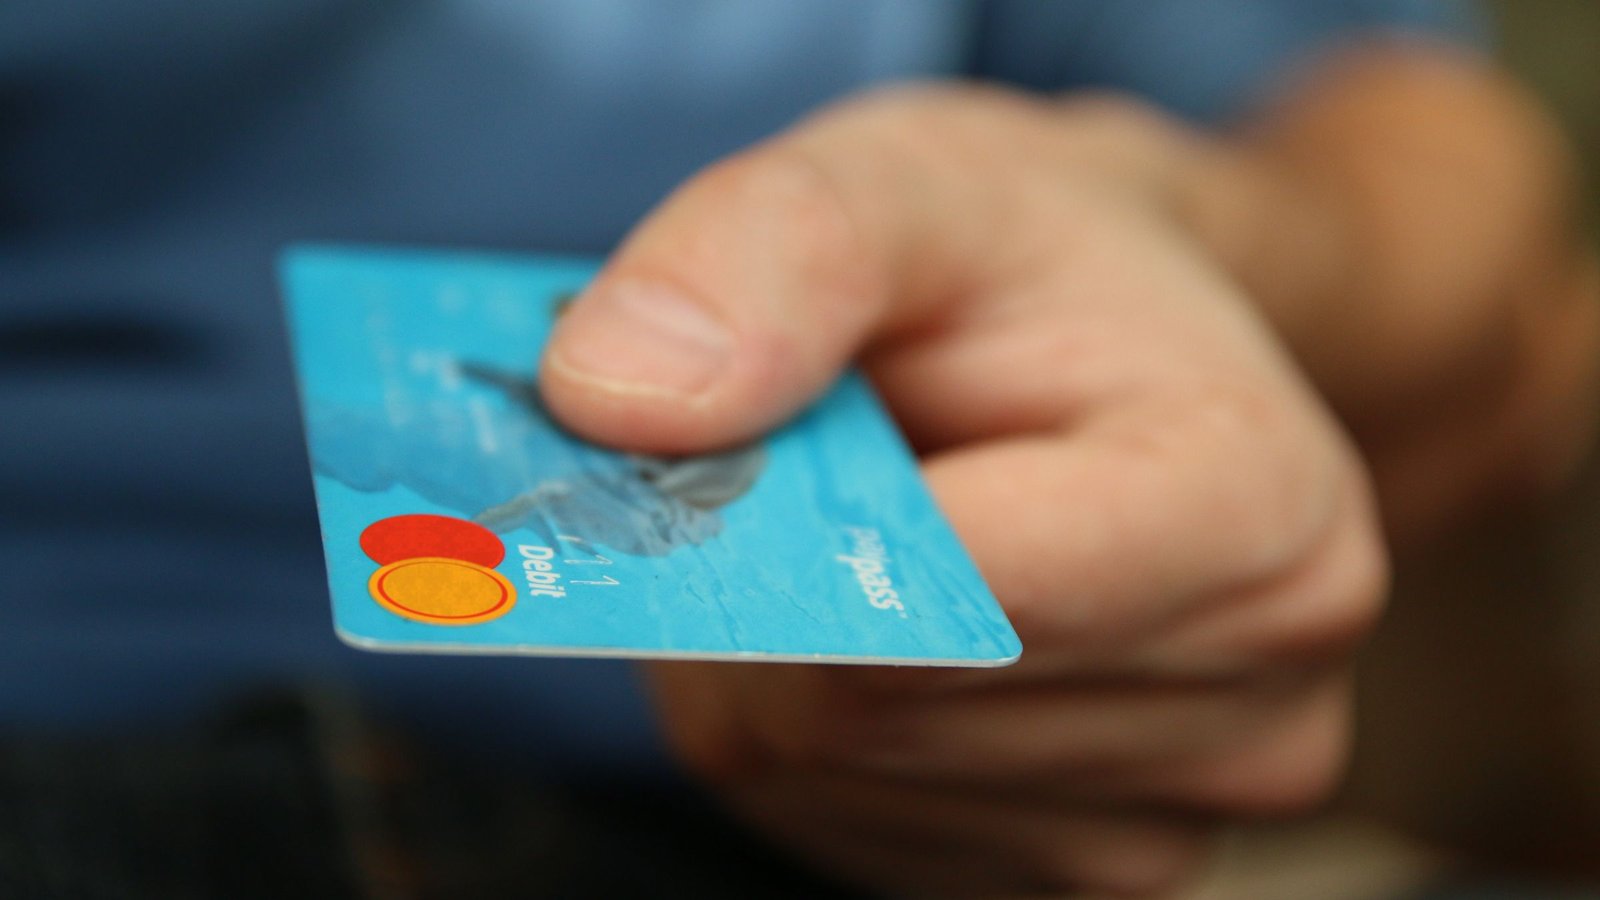 Como cancelar uma compra no cartão de crédito | Guia Prático